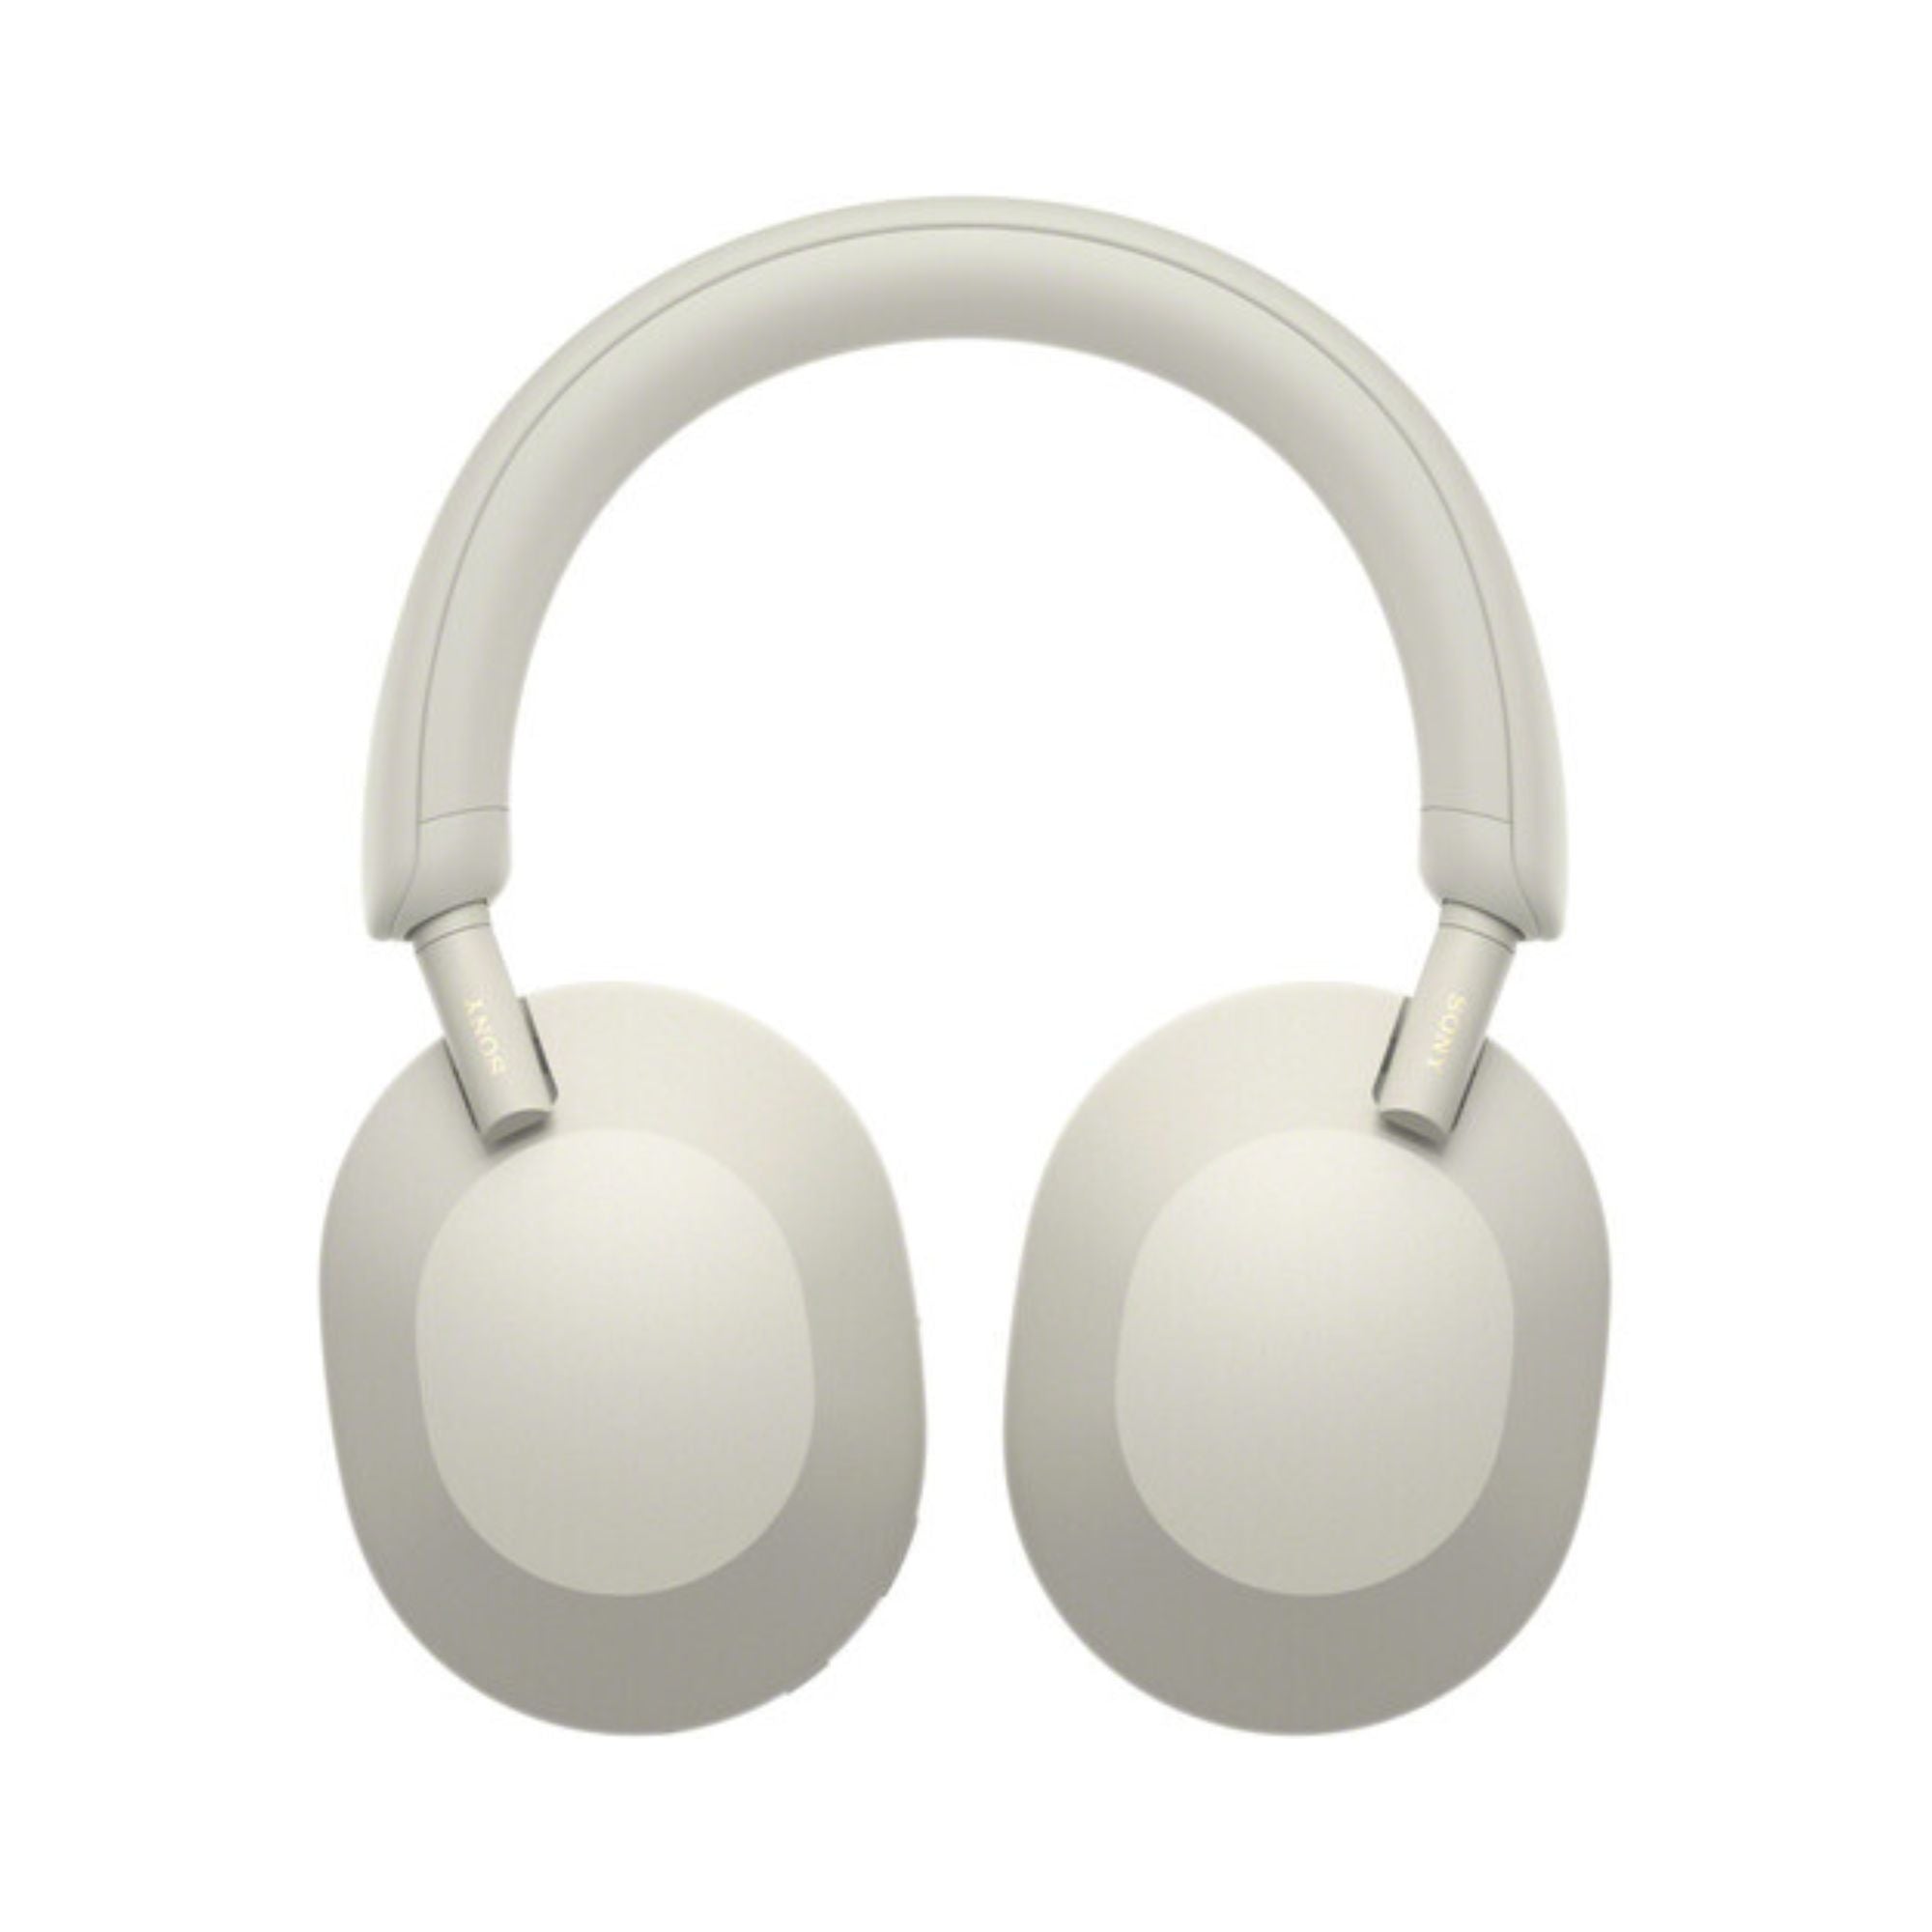 Sony WH-1000XM5 Noise-Canceling Wireless Over-Ear Headphones, Sony, Wireless Headphone - AVStore.in